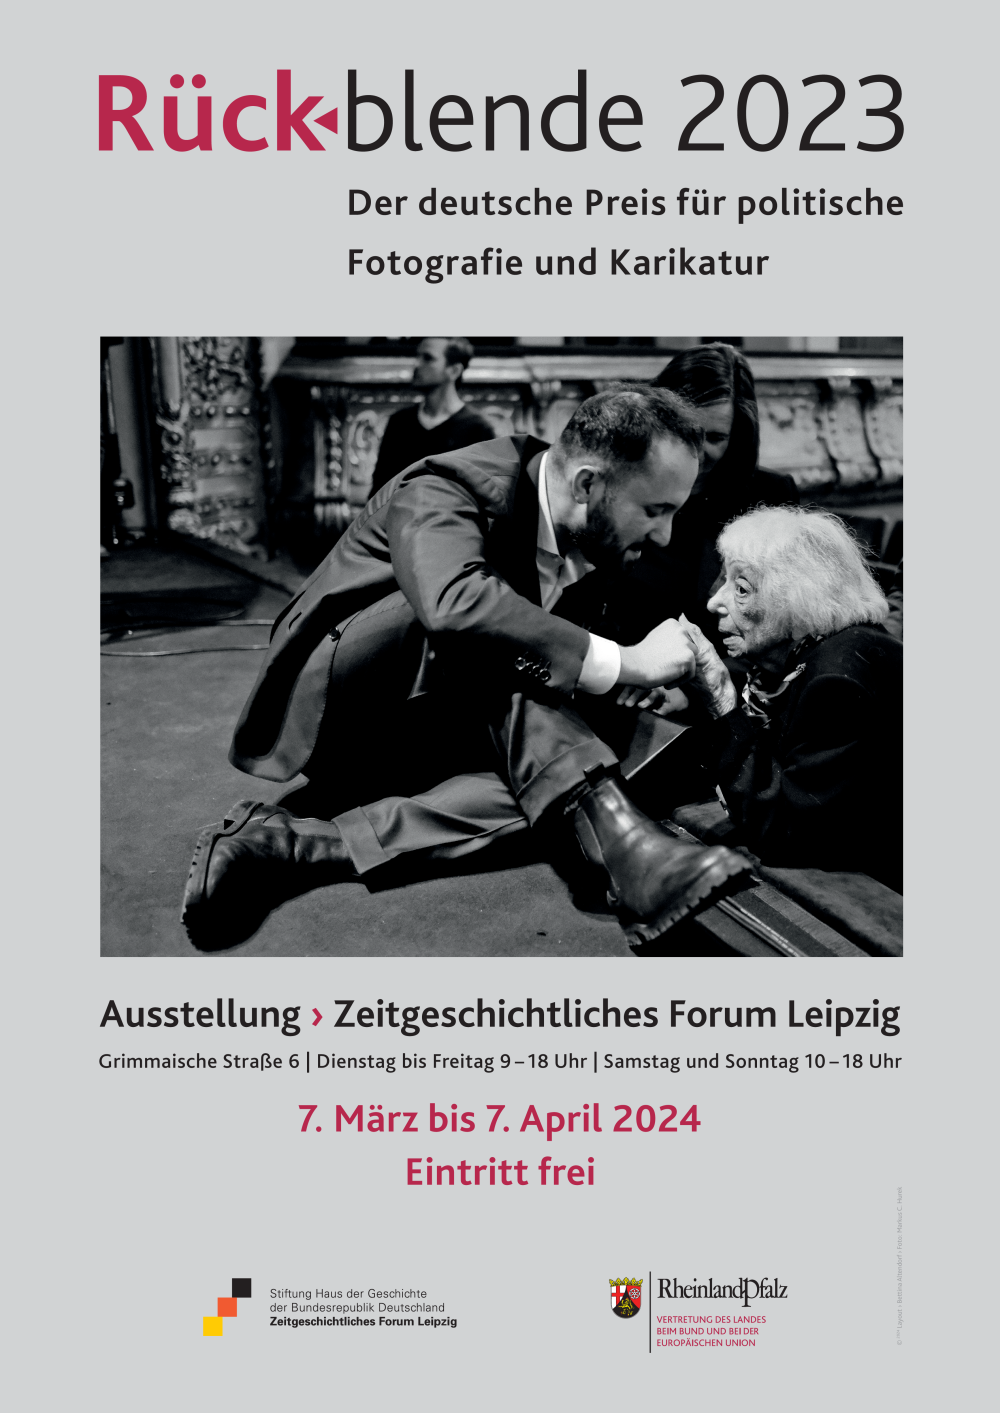 Das Plakat zur Ausstellung "Rückblende 2023". Darauf zu sehen ist das Siegerfoto mit Igor Levit und Margot Friedländer. Zusätzlich ist der Zeitraum sowie der Ort der Ausstellung angegeben.